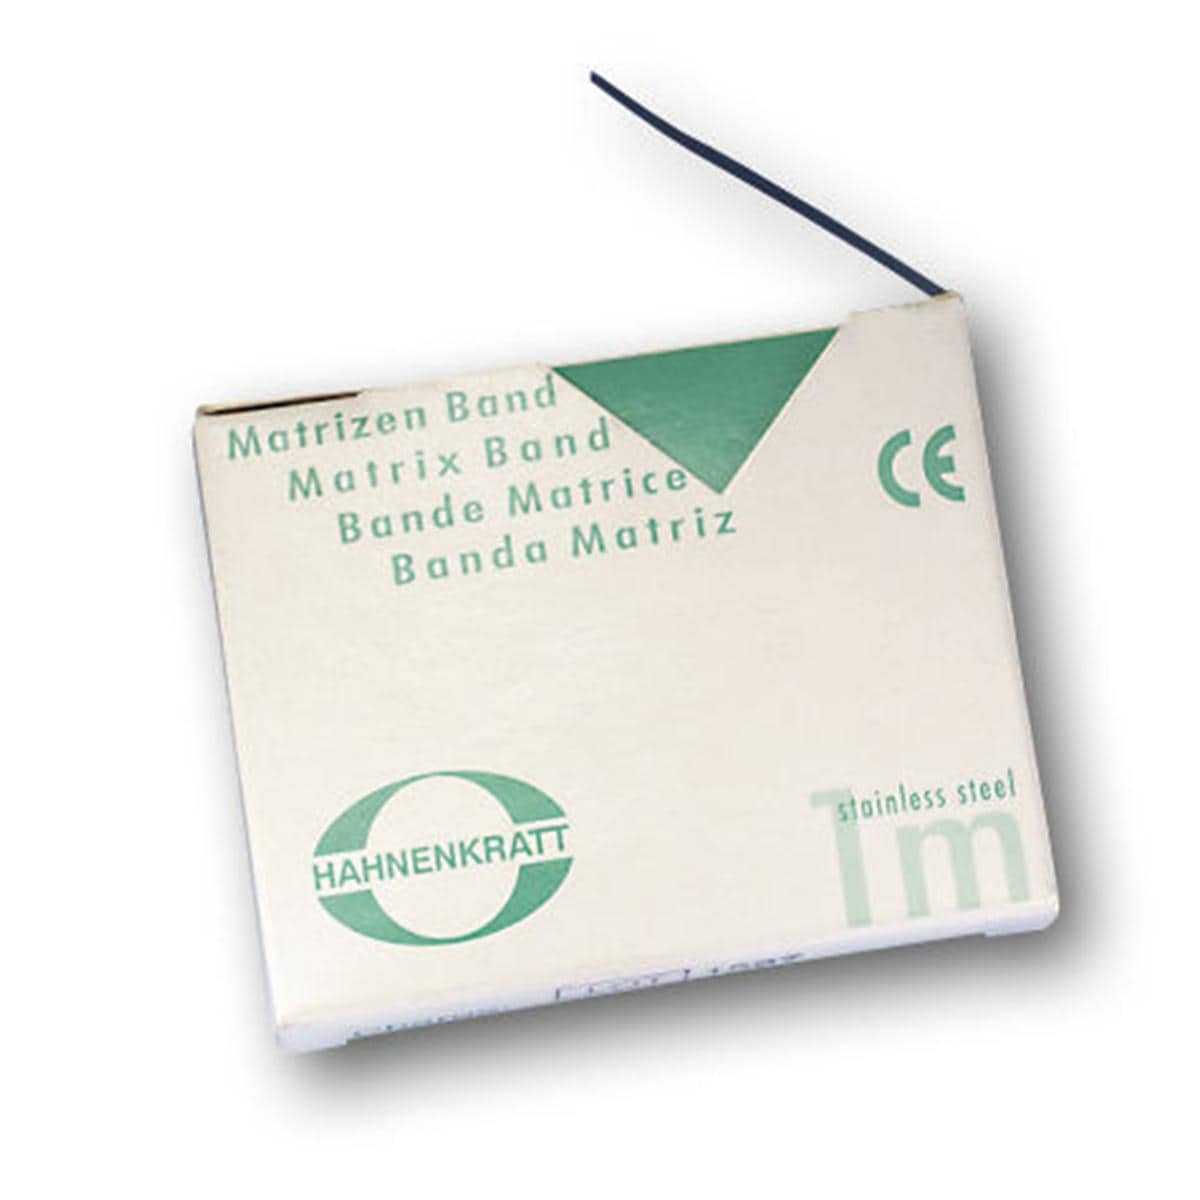 Matrizenband Hahnenkratt - Rolle 3 m - Breite 7 mm, Stärke 0,03 mm